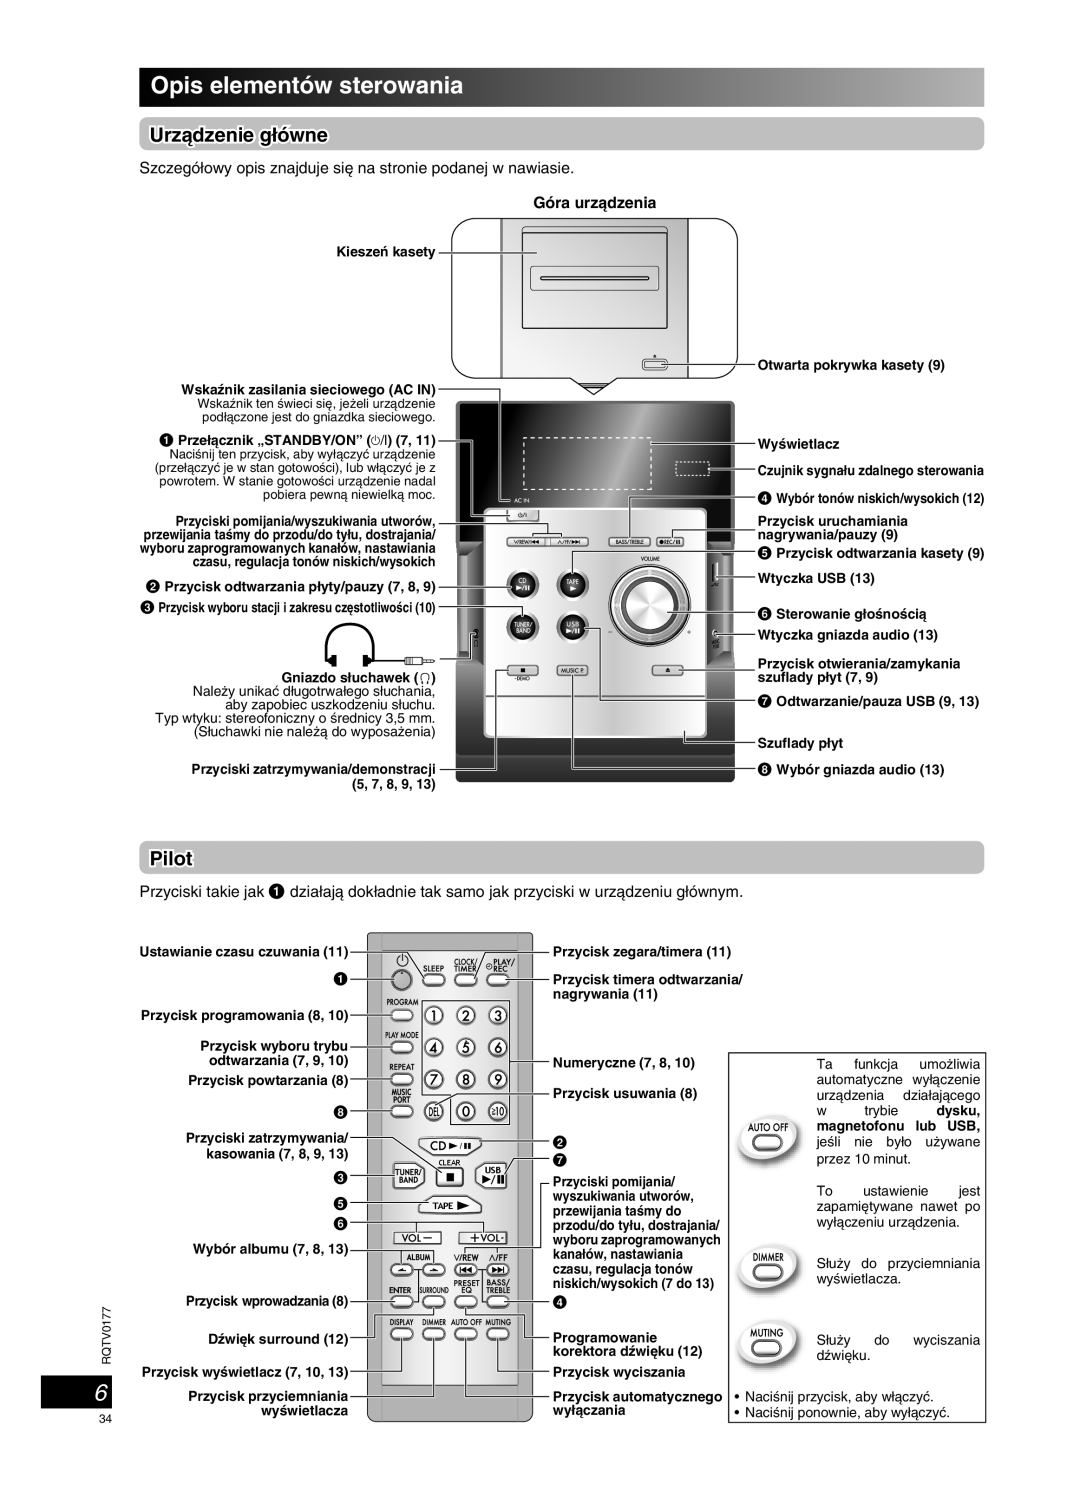 Panasonic SC-PM45 manual Opis elementów sterowania, Urzàdzenie g∏ówne, Pilot 